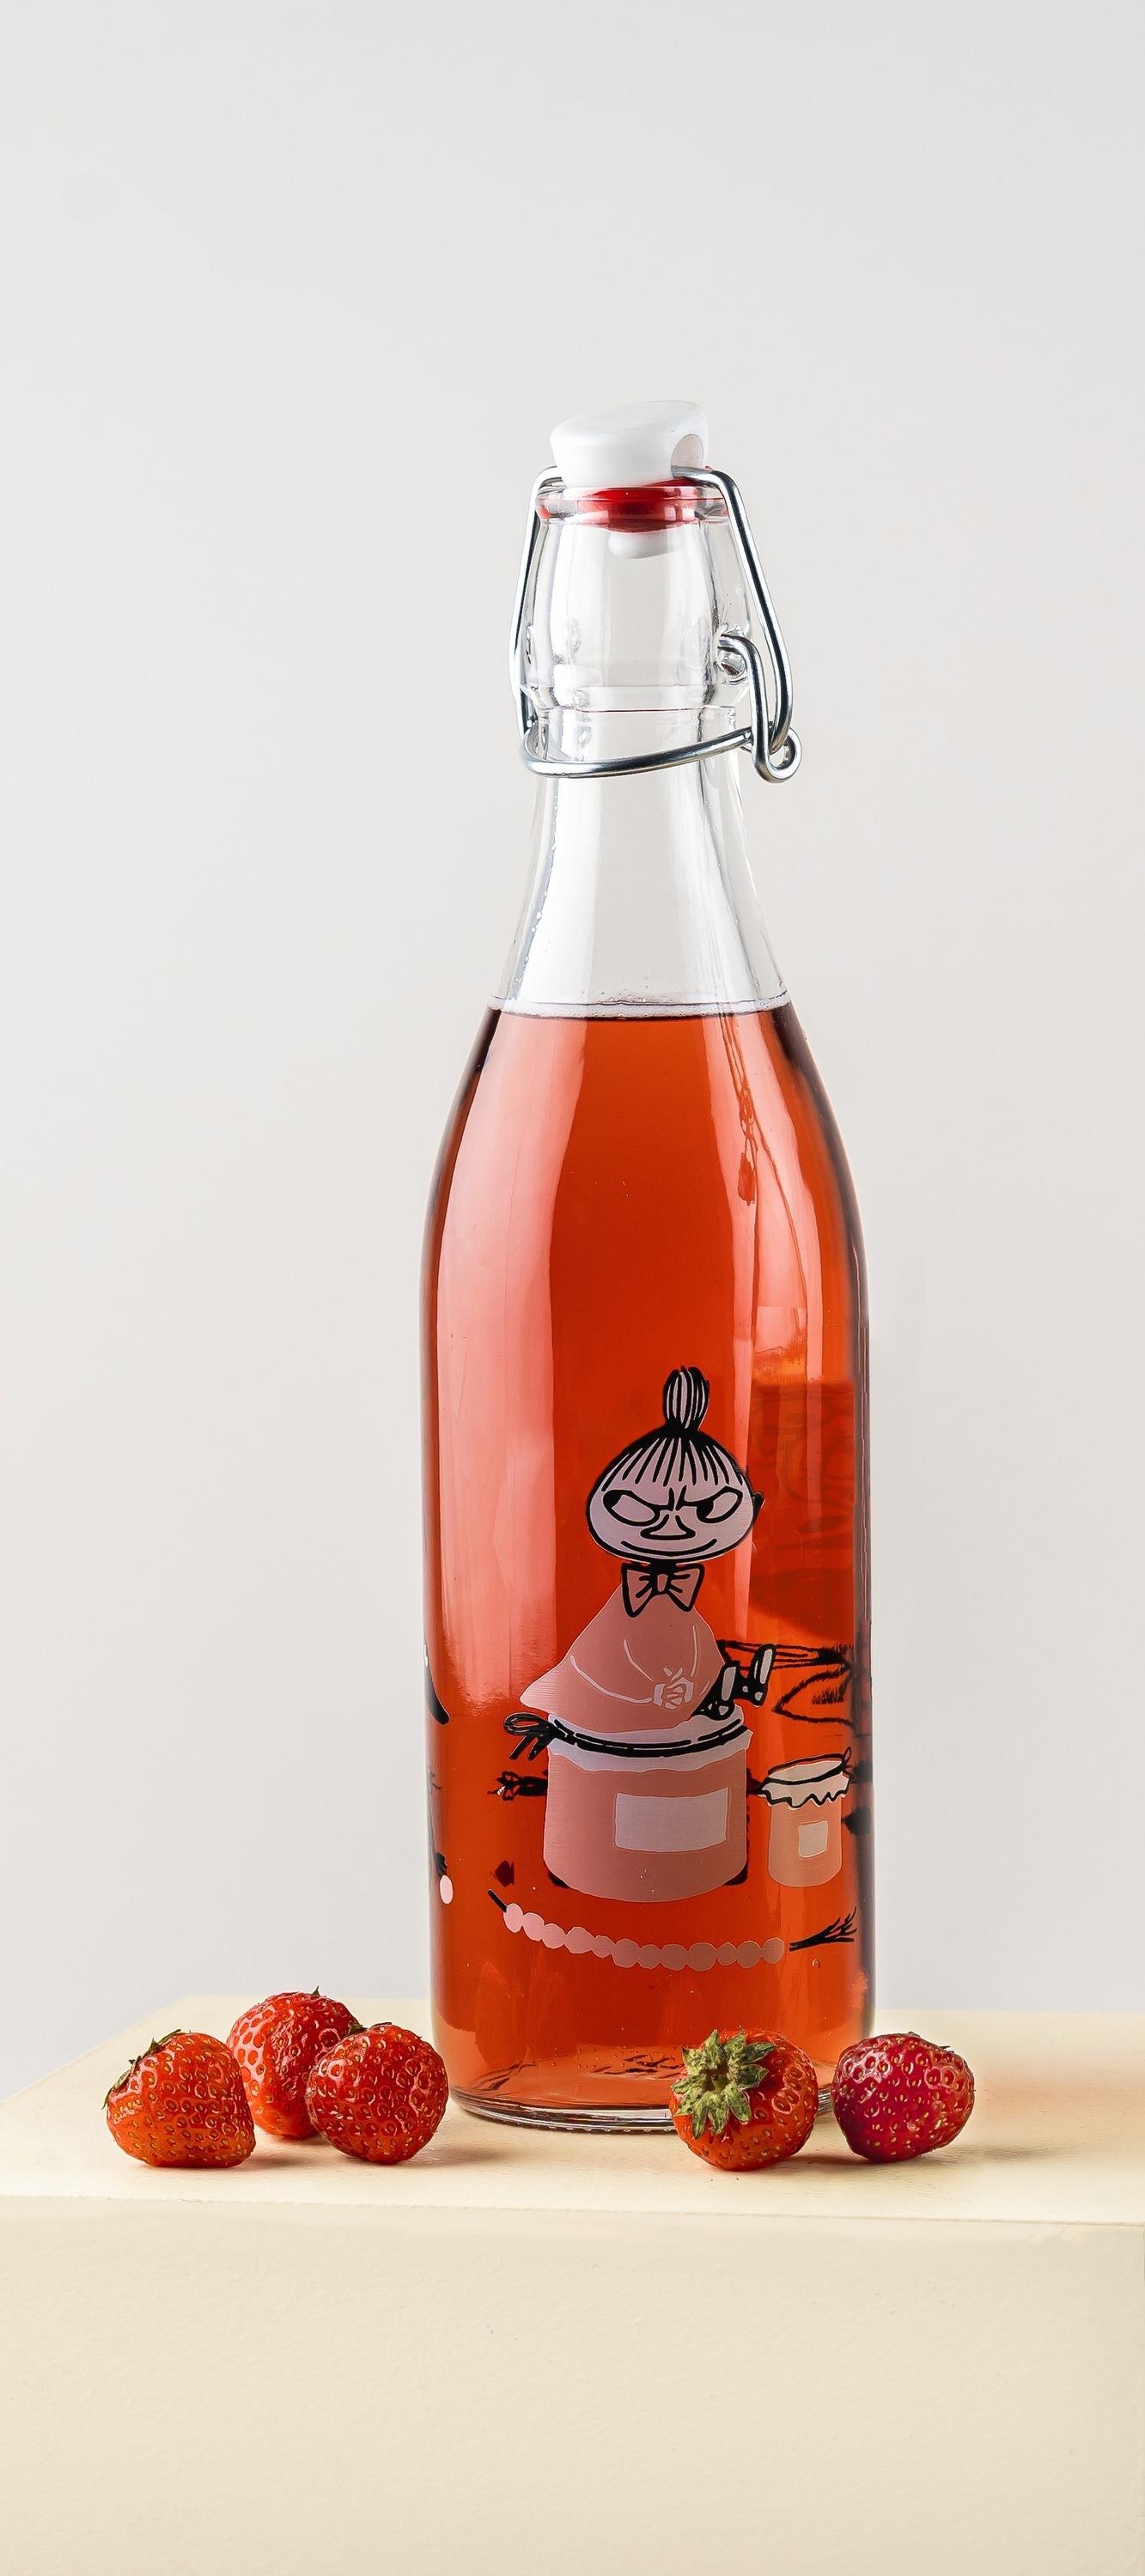 Botella de vidrio de Muurla Moomin, mermelada